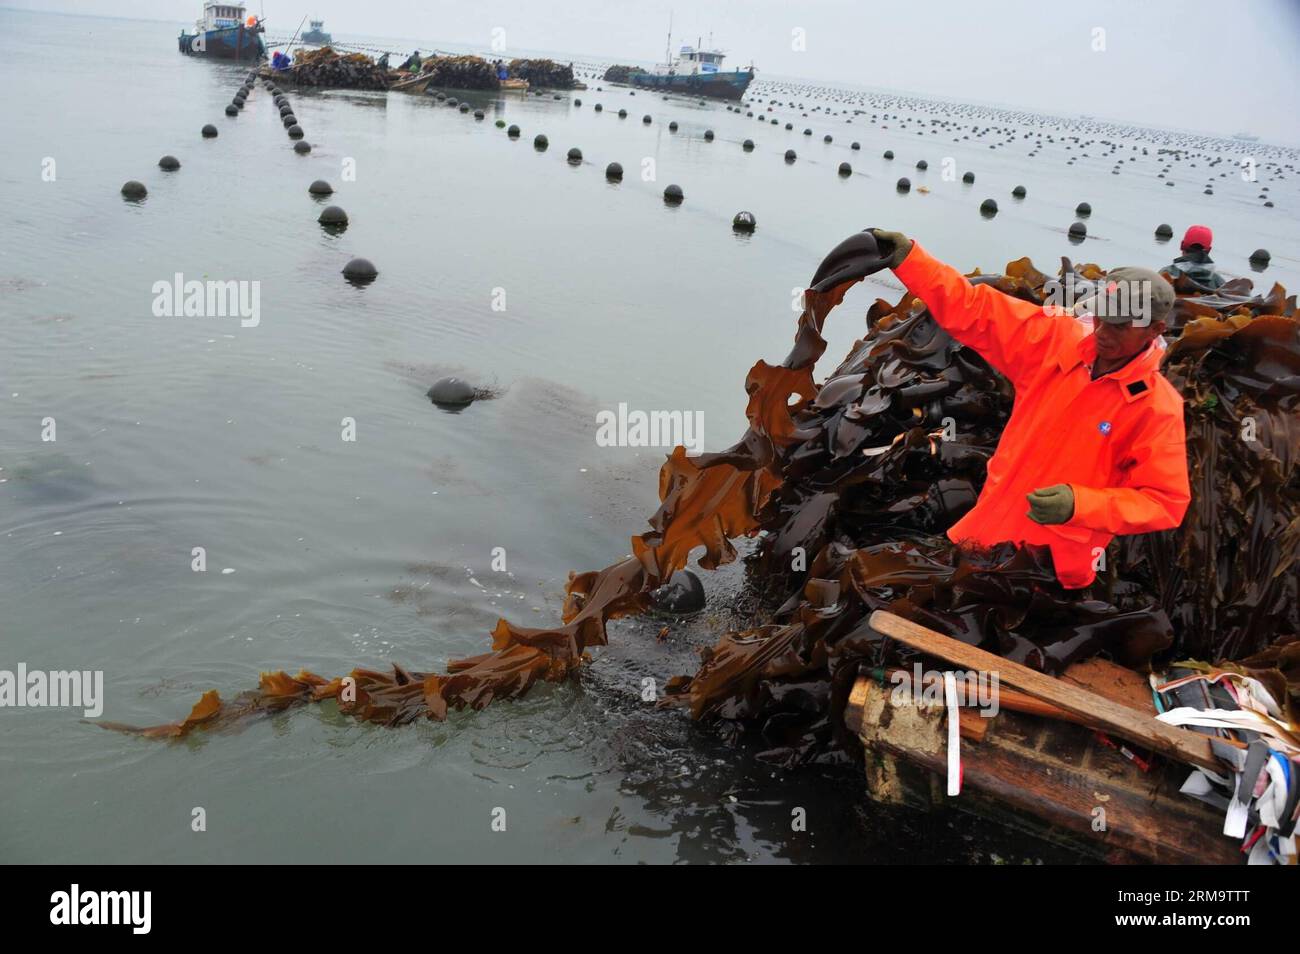 Un operaio tira su un'alga in una zona di raccolta al largo della costa di Rongcheng, provincia dello Shandong della Cina orientale, 1 giugno 2014. A Rongcheng, i lavoratori sono impegnati a raccogliere alghe commestibili man mano che arriva la stagione del raccolto. Rongcheng è un'importante piantatrice e produttrice di alghe marine commestibili in Cina, producendo ogni anno oltre la metà dei prodotti di alghe marine del paese. (Xinhua/Ren Mengxue) (lmm) CHINA-SHANDONG-RONGCHENG-SEAWEED-HARVESTING (CN) PUBLICATIONxNOTxINxCHN un lavoratore tira su un'alga in una zona di raccolta al largo della costa di Rongcheng nella provincia di Shan Dong della Cina orientale 1 giugno 2014 a Rongcheng i lavoratori sono collettori occupati Foto Stock